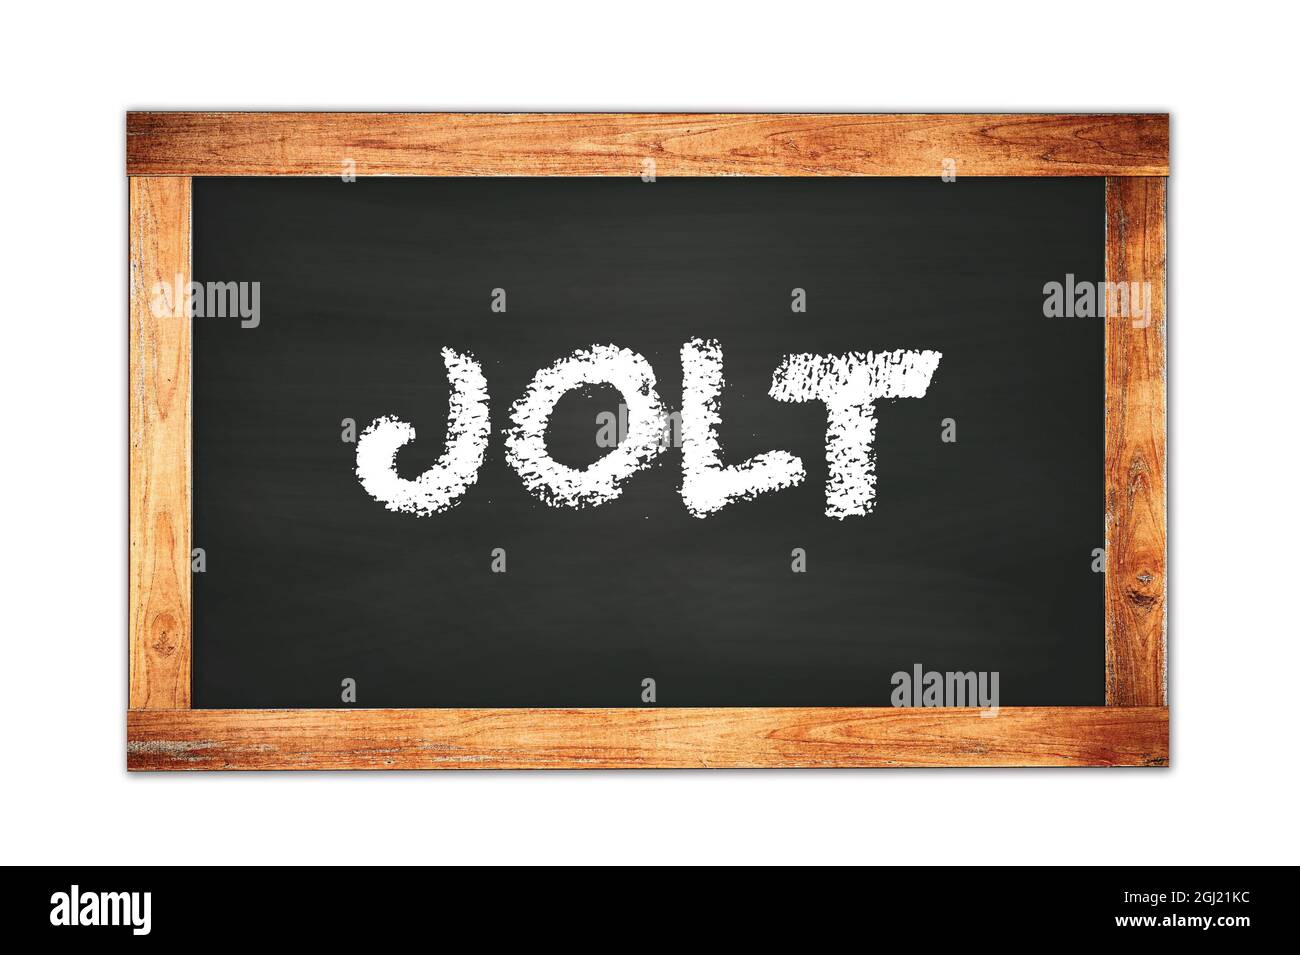 JOLT text written on black wooden frame school blackboard. Stock Photo